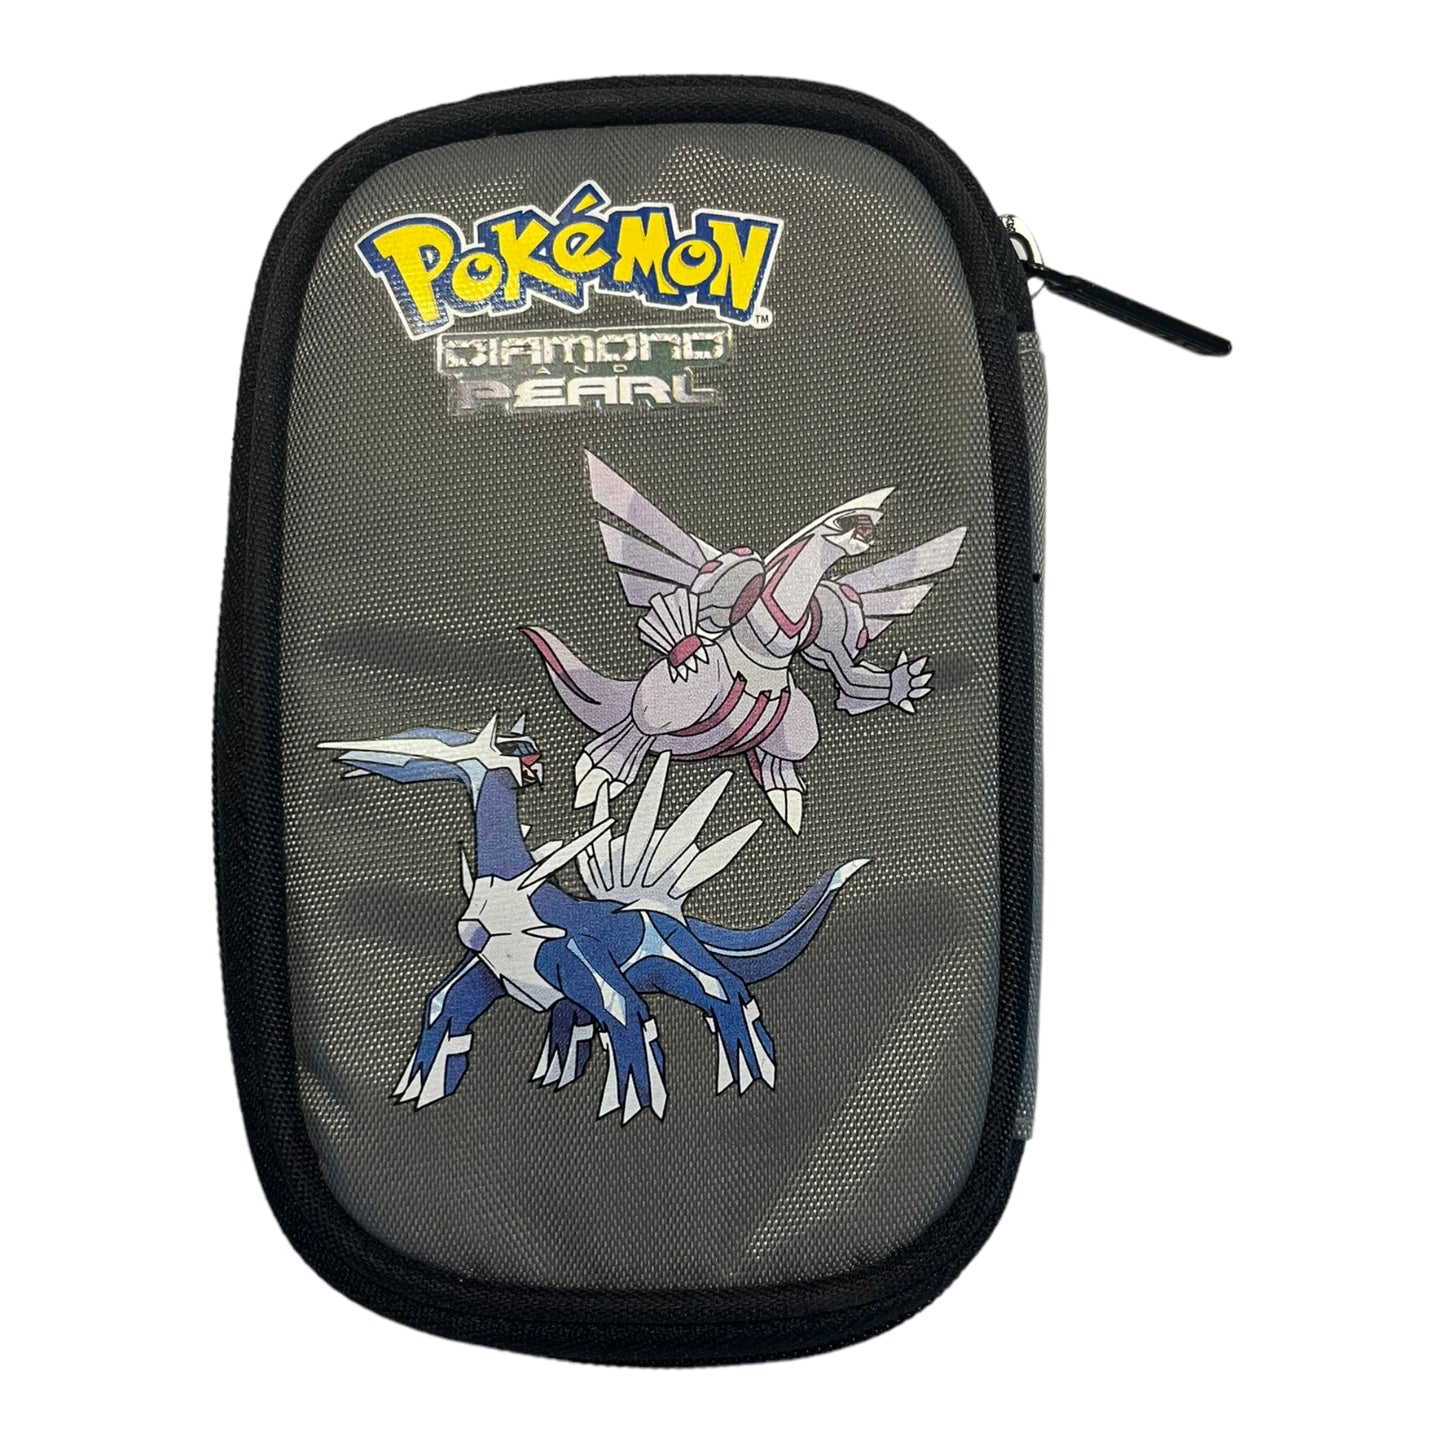 Pokémon Diamond & Pearl DS Lite Tas